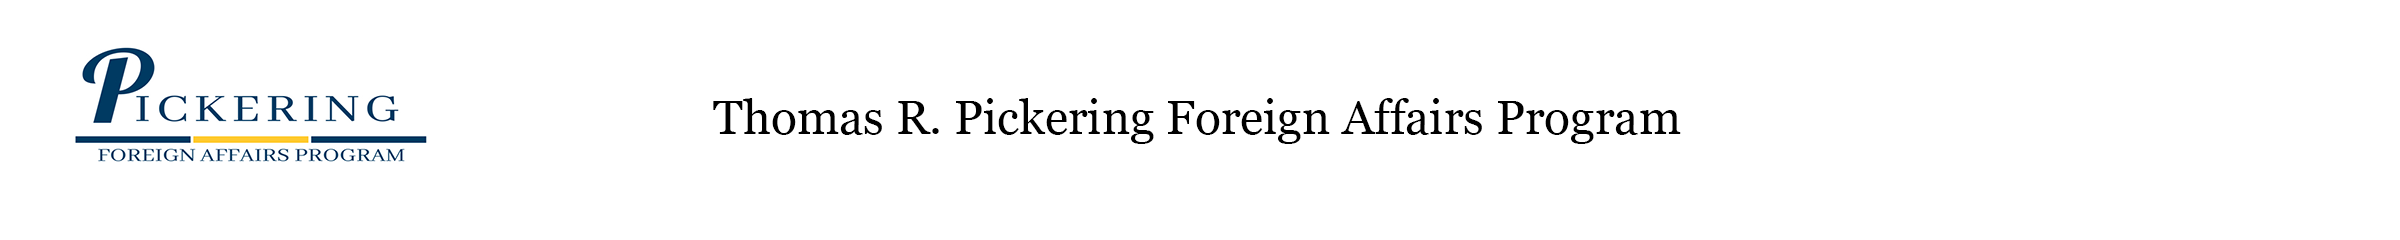 Thomas R. Pickering Foreign Affairs Graduate Fellowship Program logo